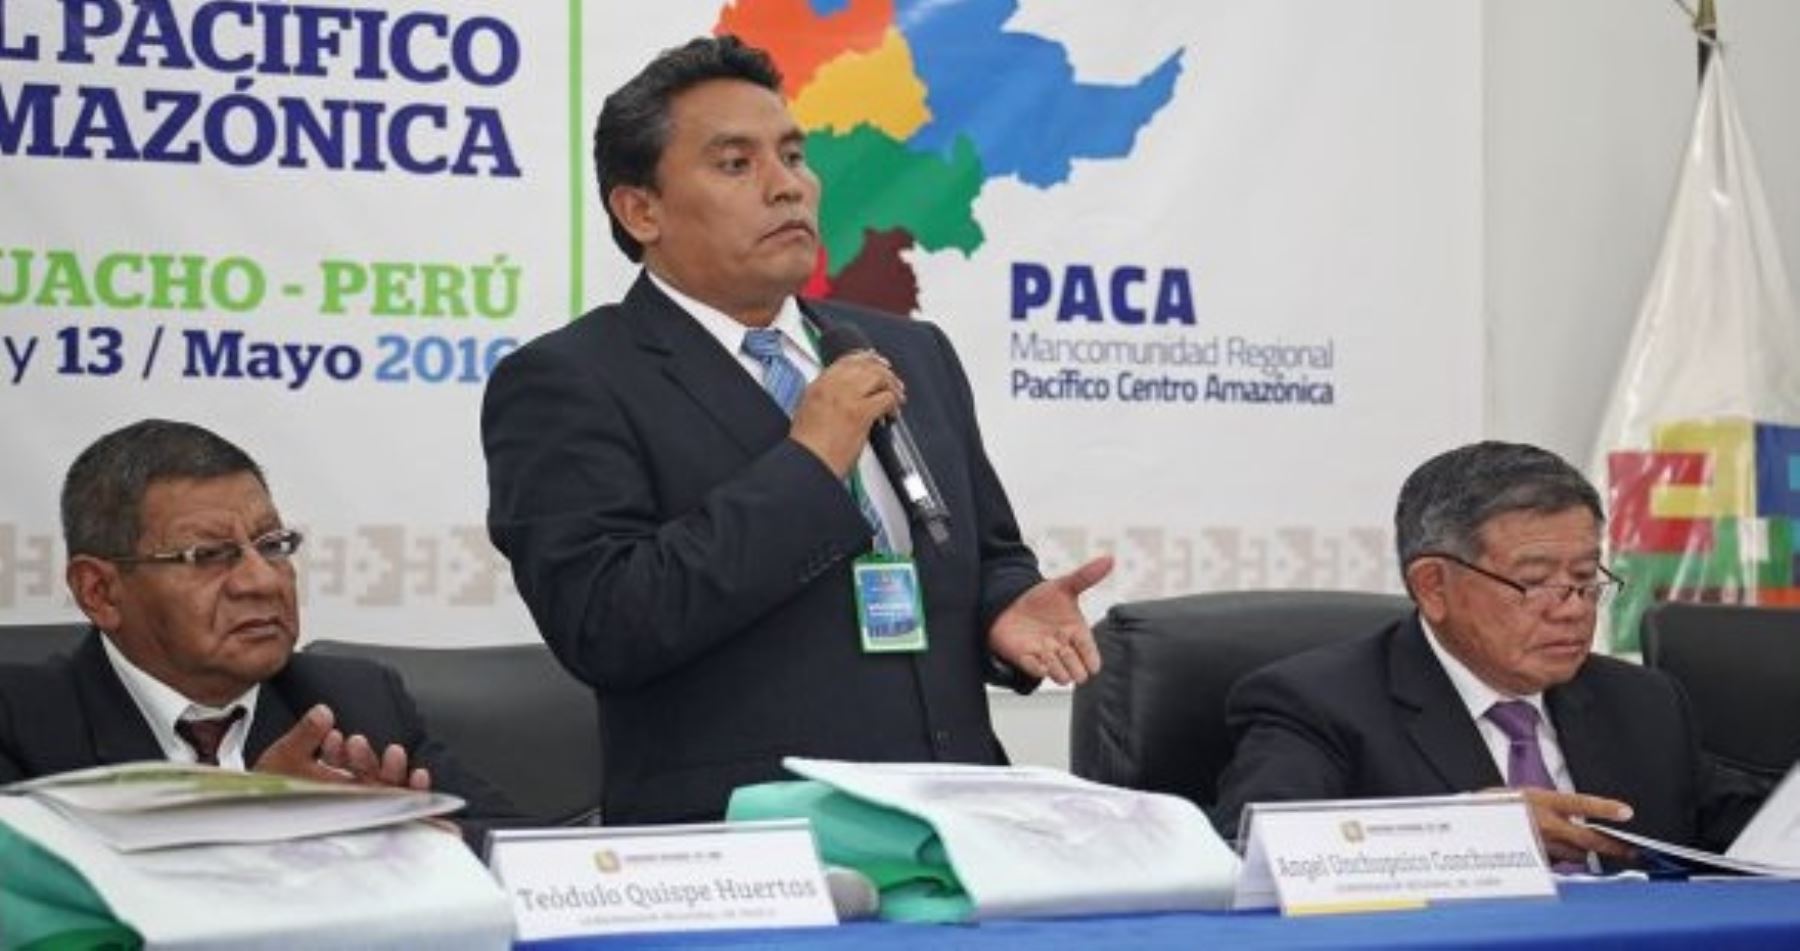 Los gobernadores regionales que integran la Mancomunidad Pacífico Centro Amazónica (PACA), reunidos en la ciudad de Huacho, acordaron gestionar mega proyectos viales y ferroviarios para formar corredores integrales de desarrollo económico y turístico.